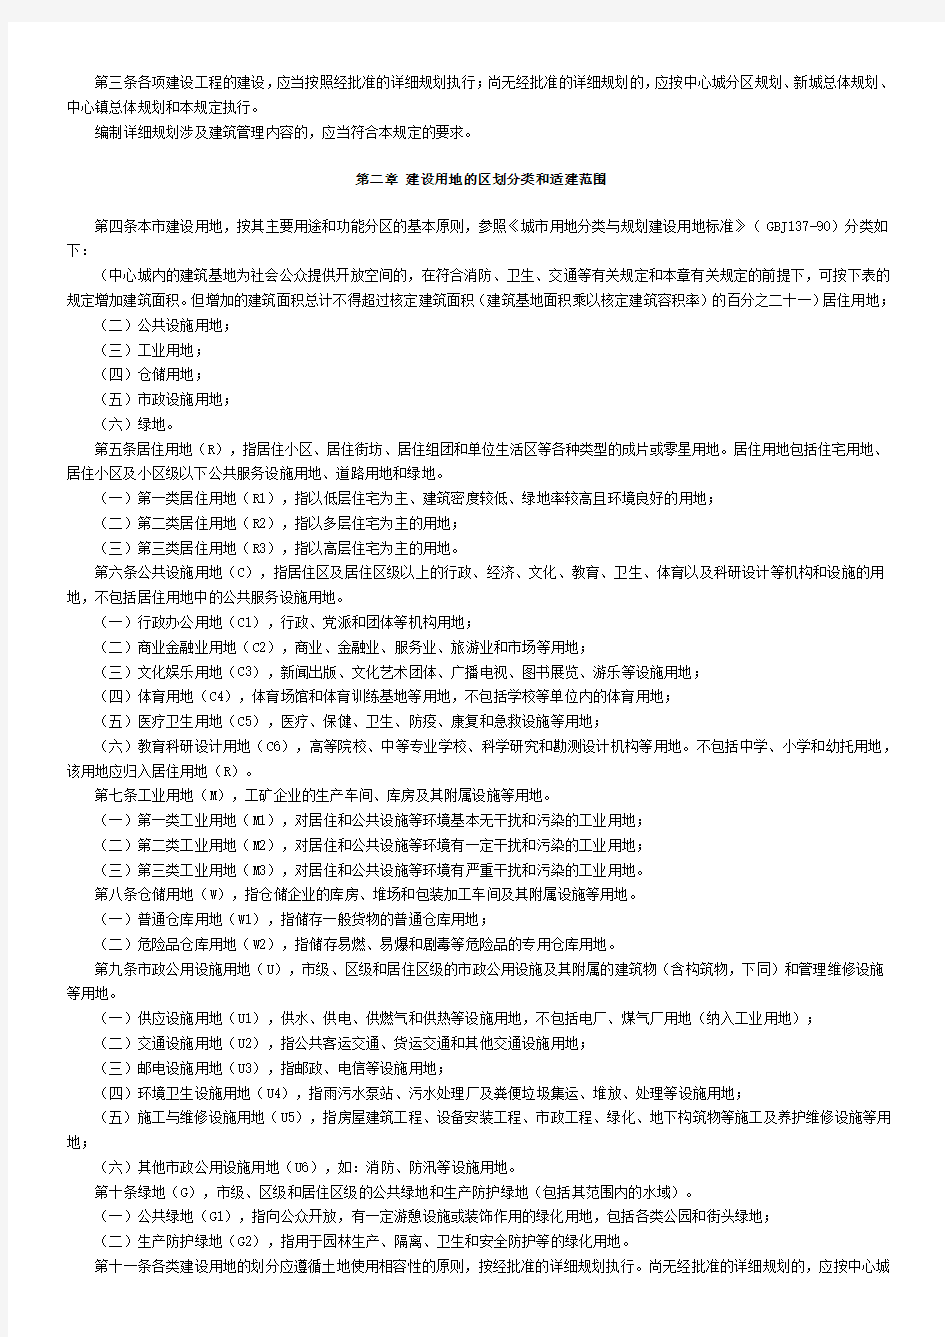 上海市城市规划管理技术规定 图和表经整理